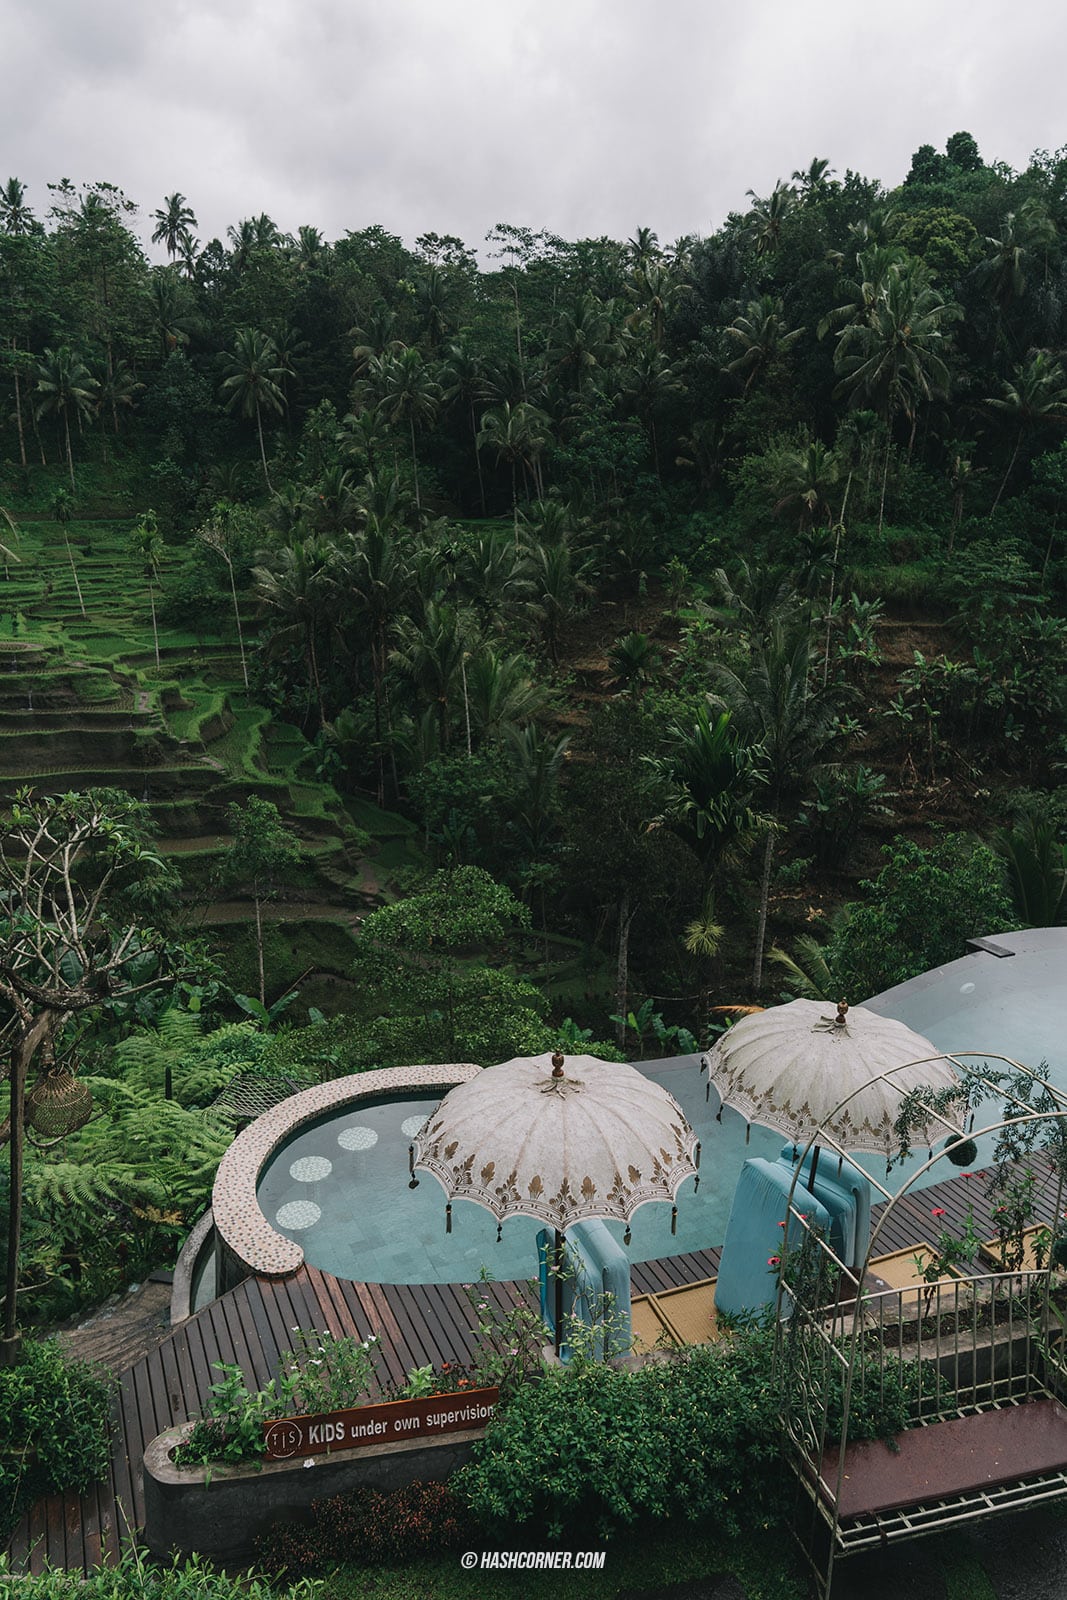 รีวิว บาหลี (Bali) x อินโดนีเซีย เที่ยวจัดเต็มครบทุกแลนด์มาร์ค